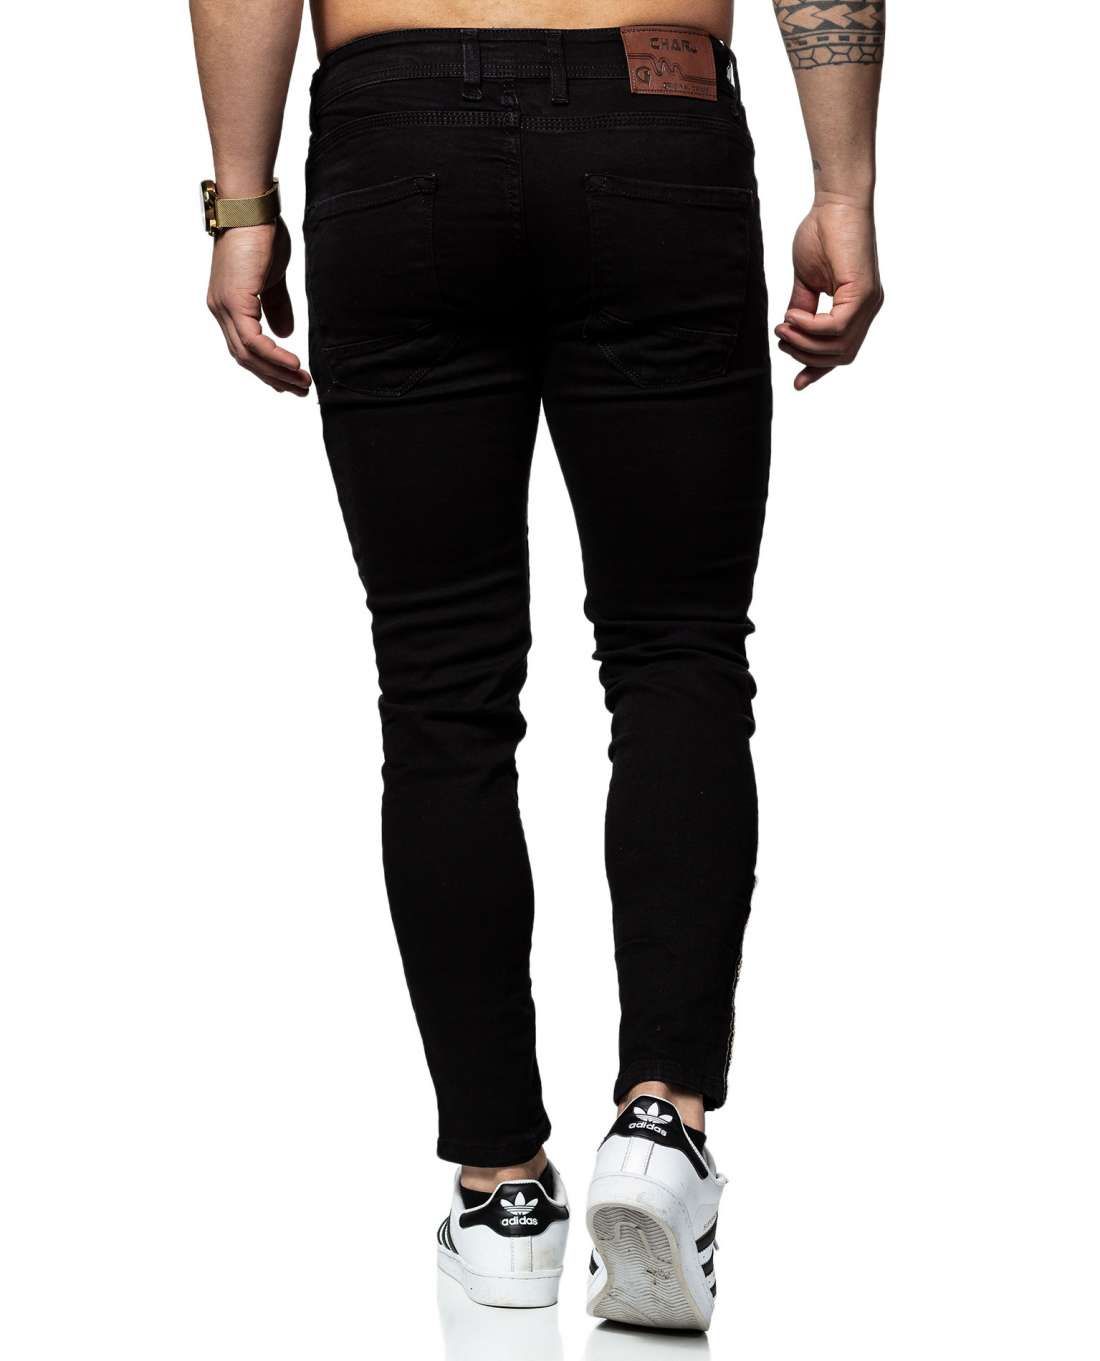 Chari Jeans Black Skinny Fit L32 Jerone